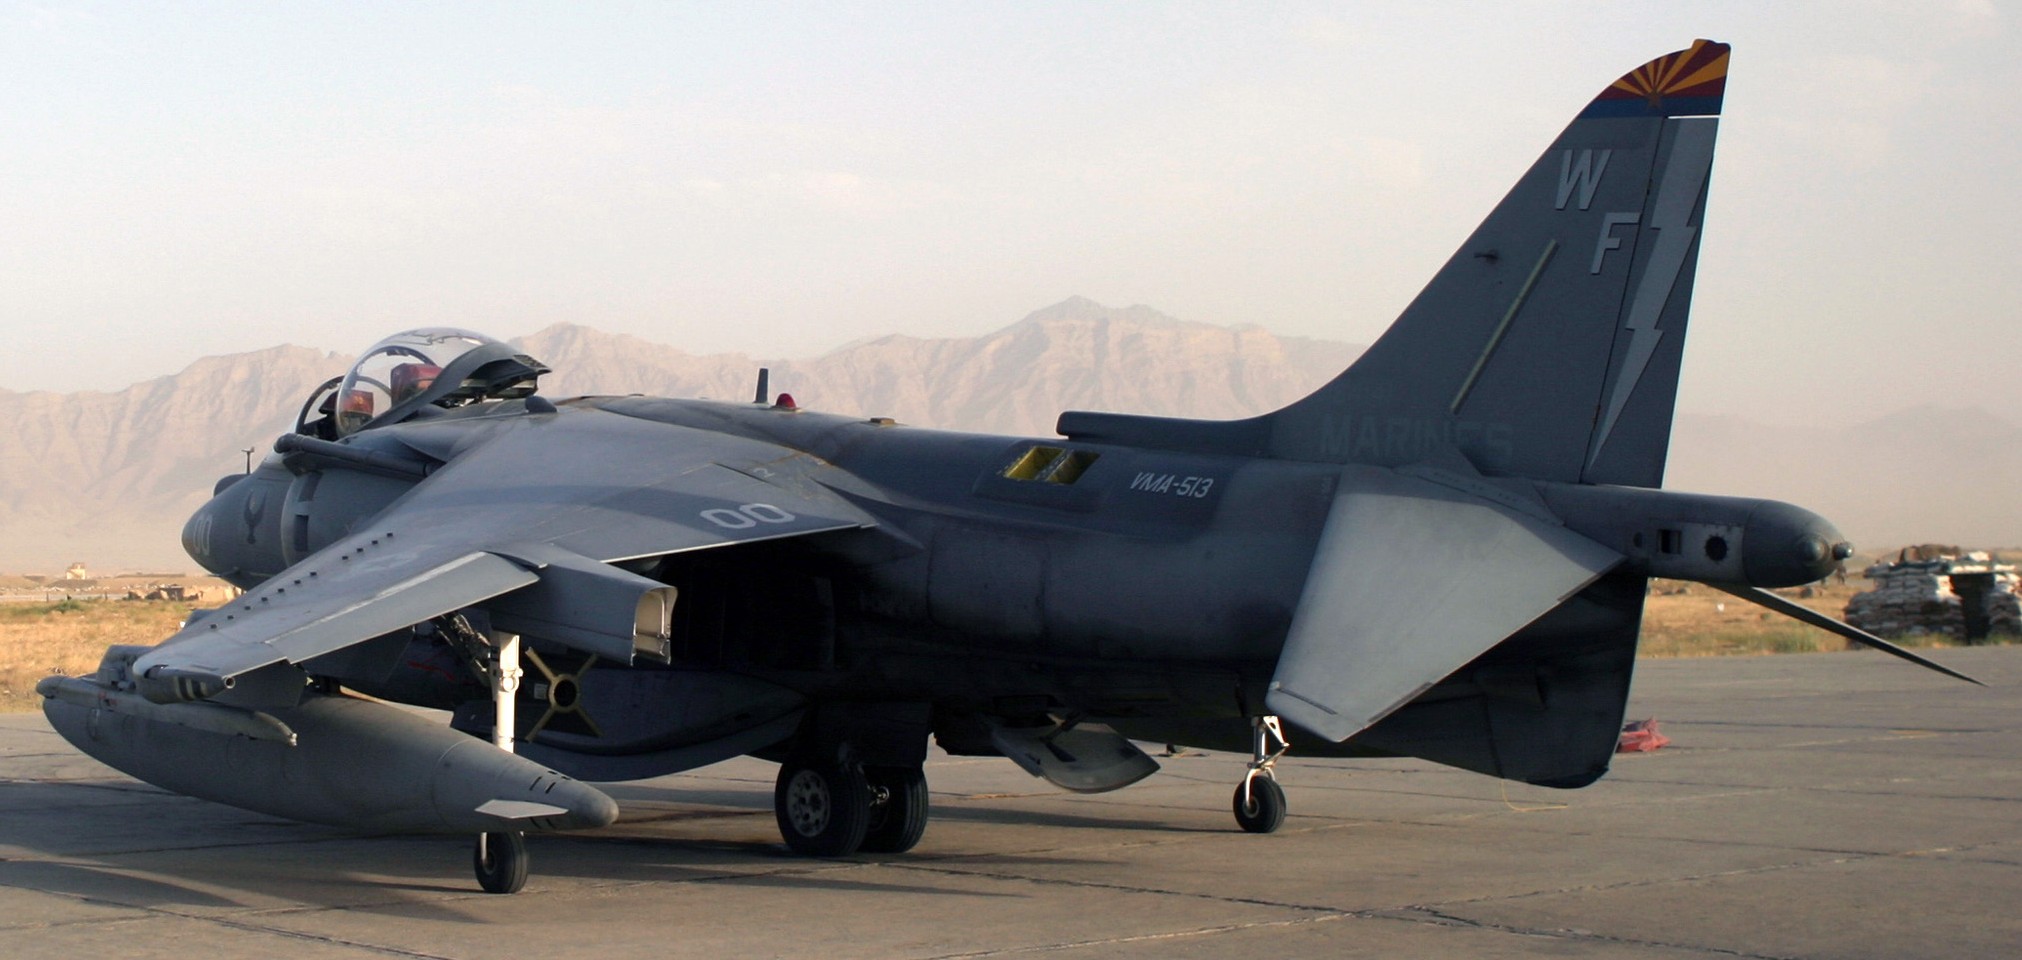 vma-513 flying nightmares av-8b harrier bagram airbase afghanistan 2003